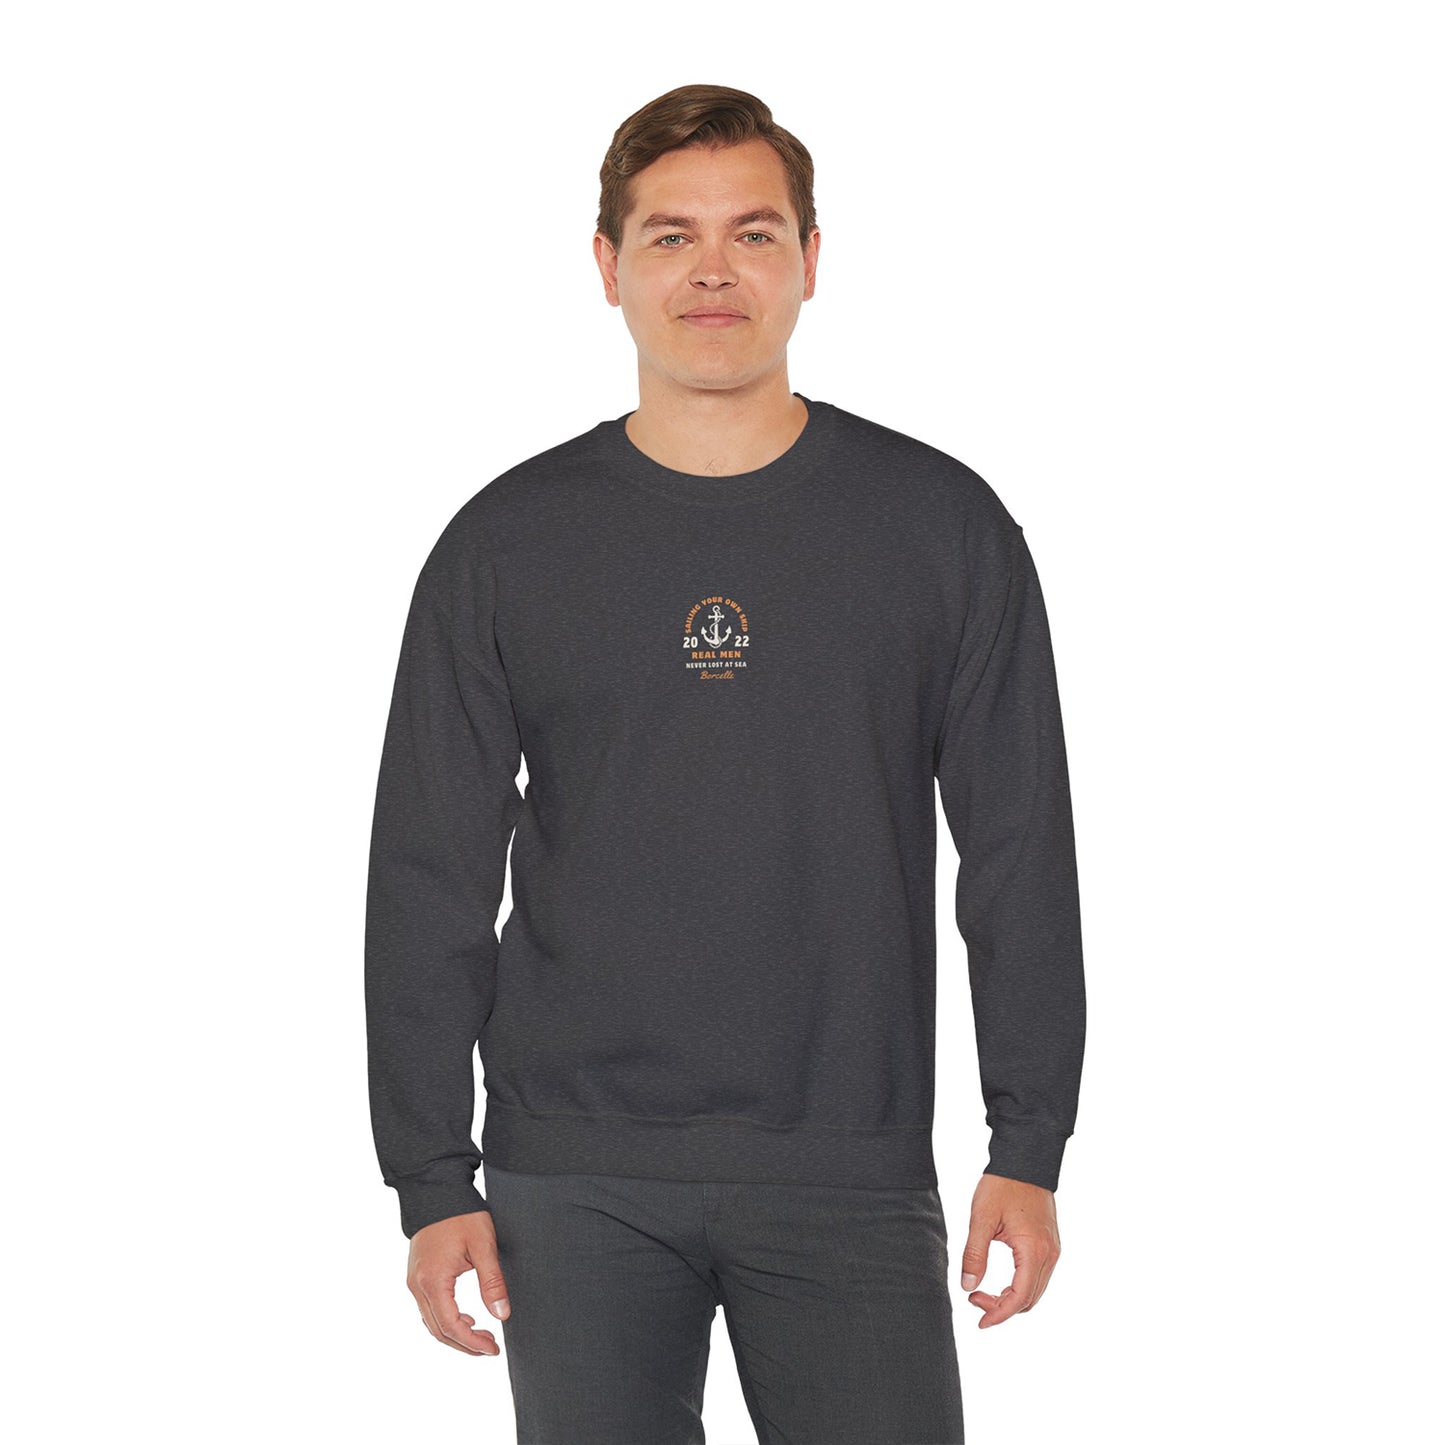 Your Destiny Sweatshirt for Men